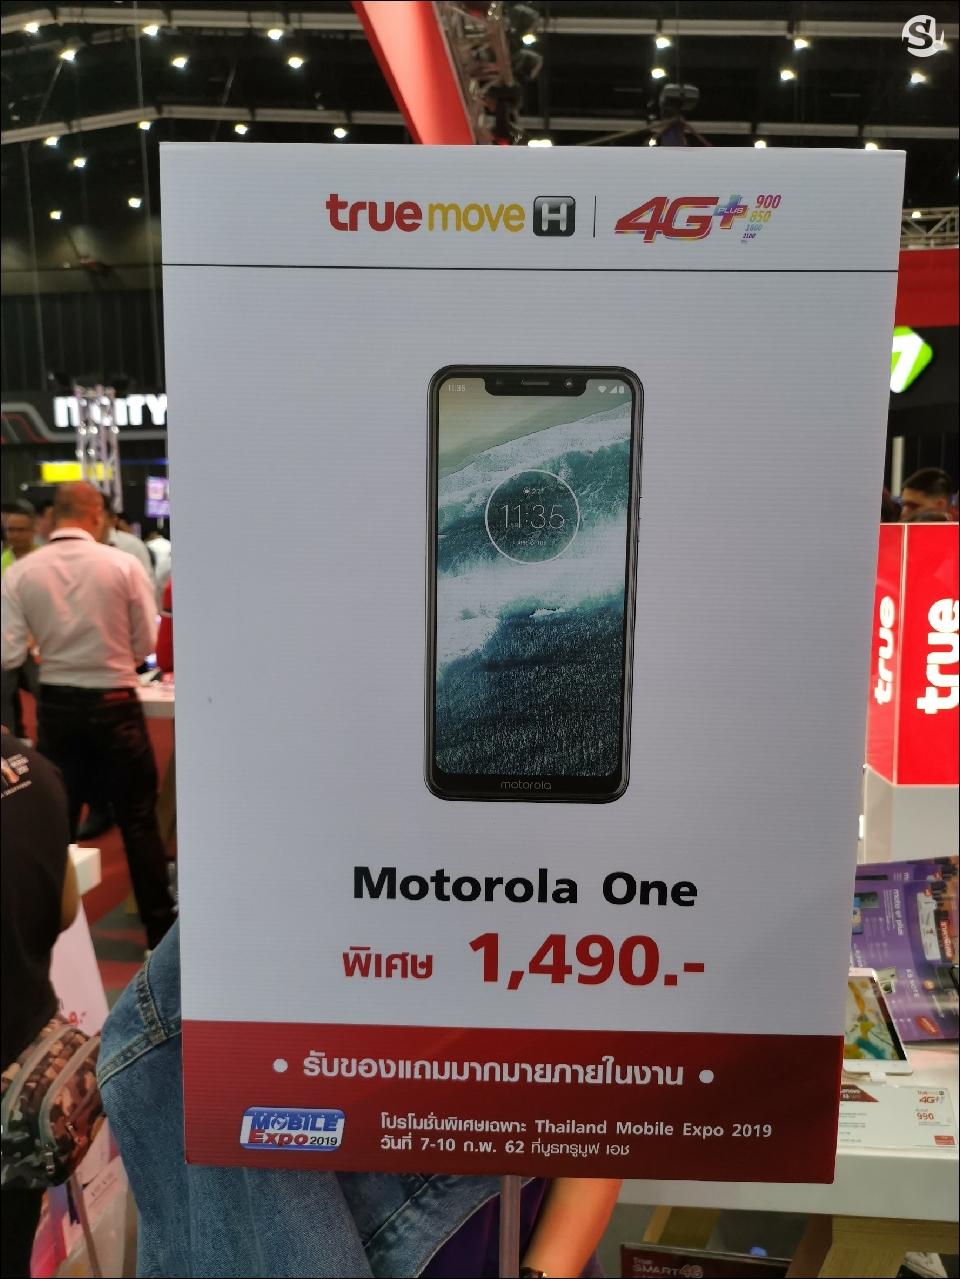 รวมโปรโมชั่นเด็ดจากบูธ Truemove H ในงาน Thailand Mobile Expo 2019